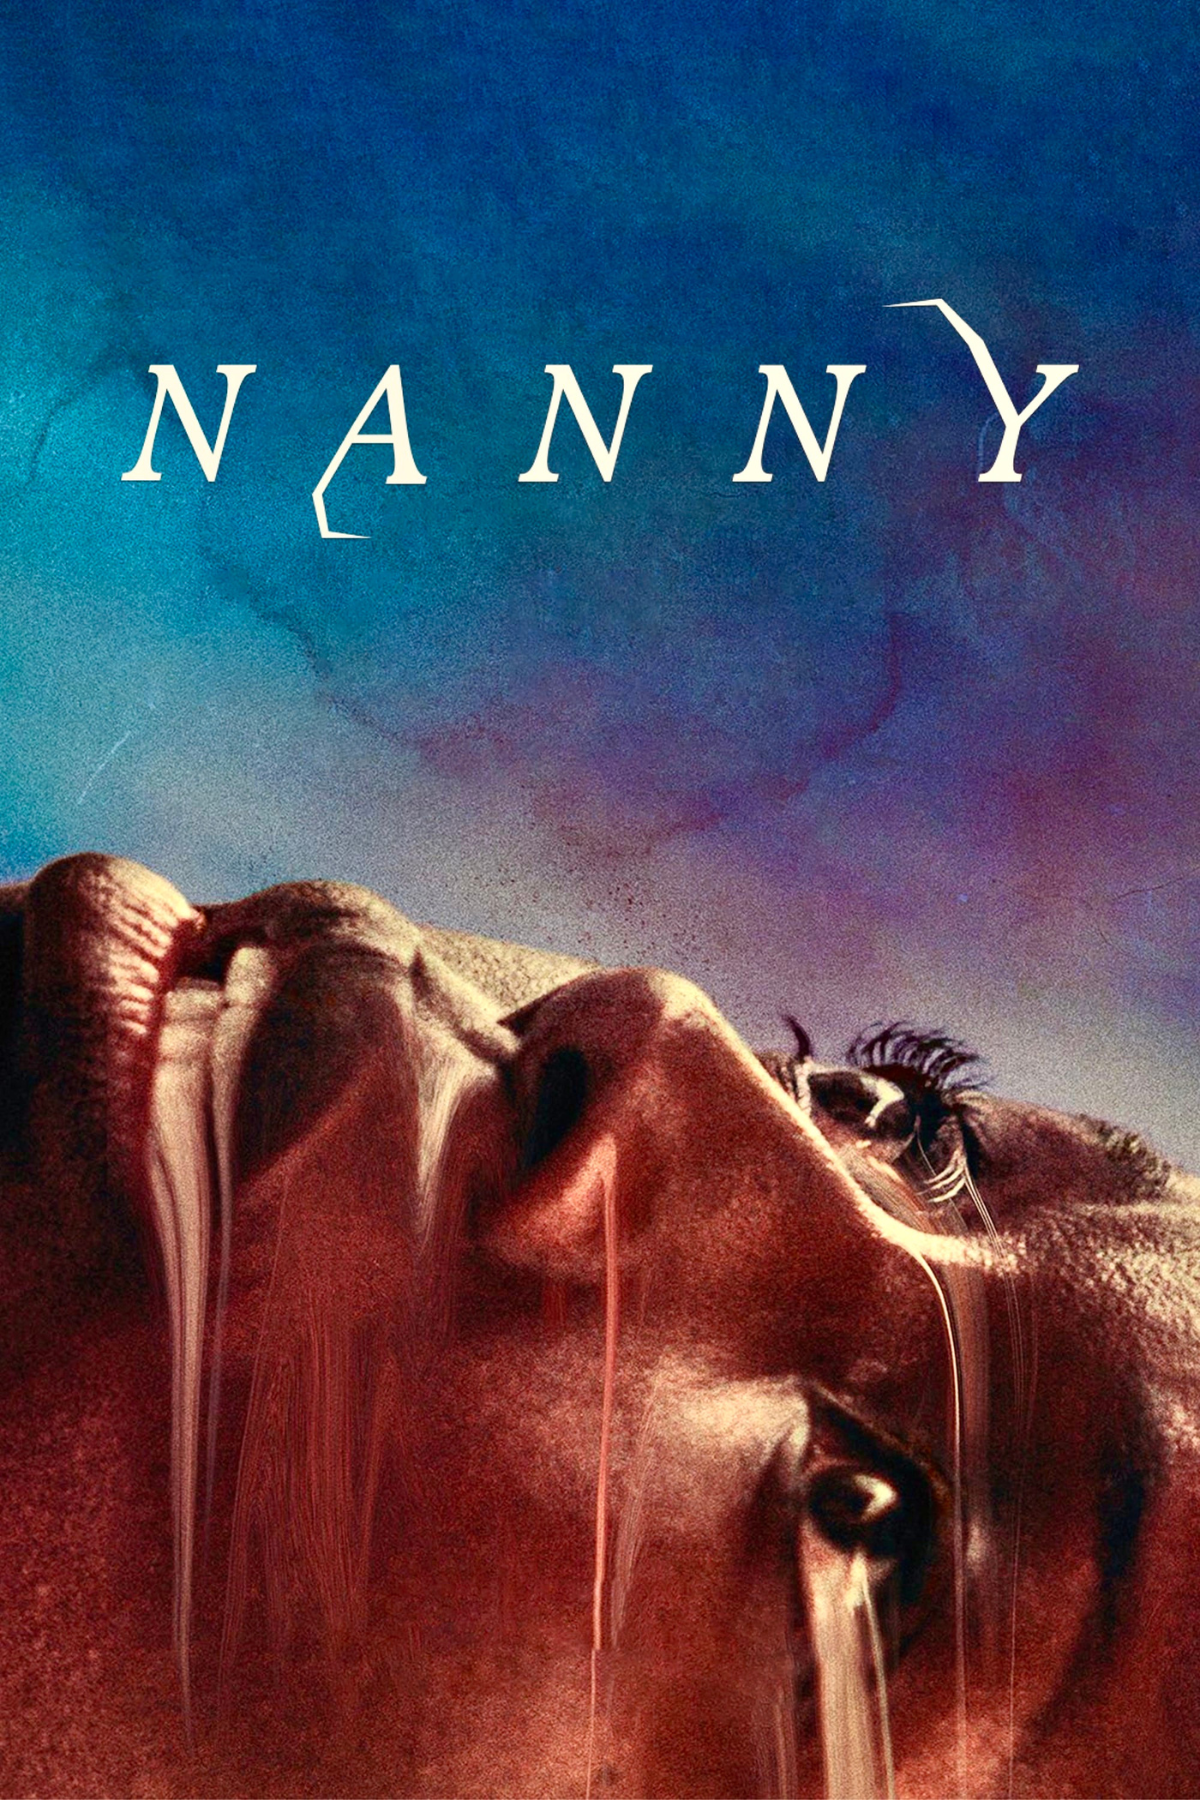 nanny 2022 movie review